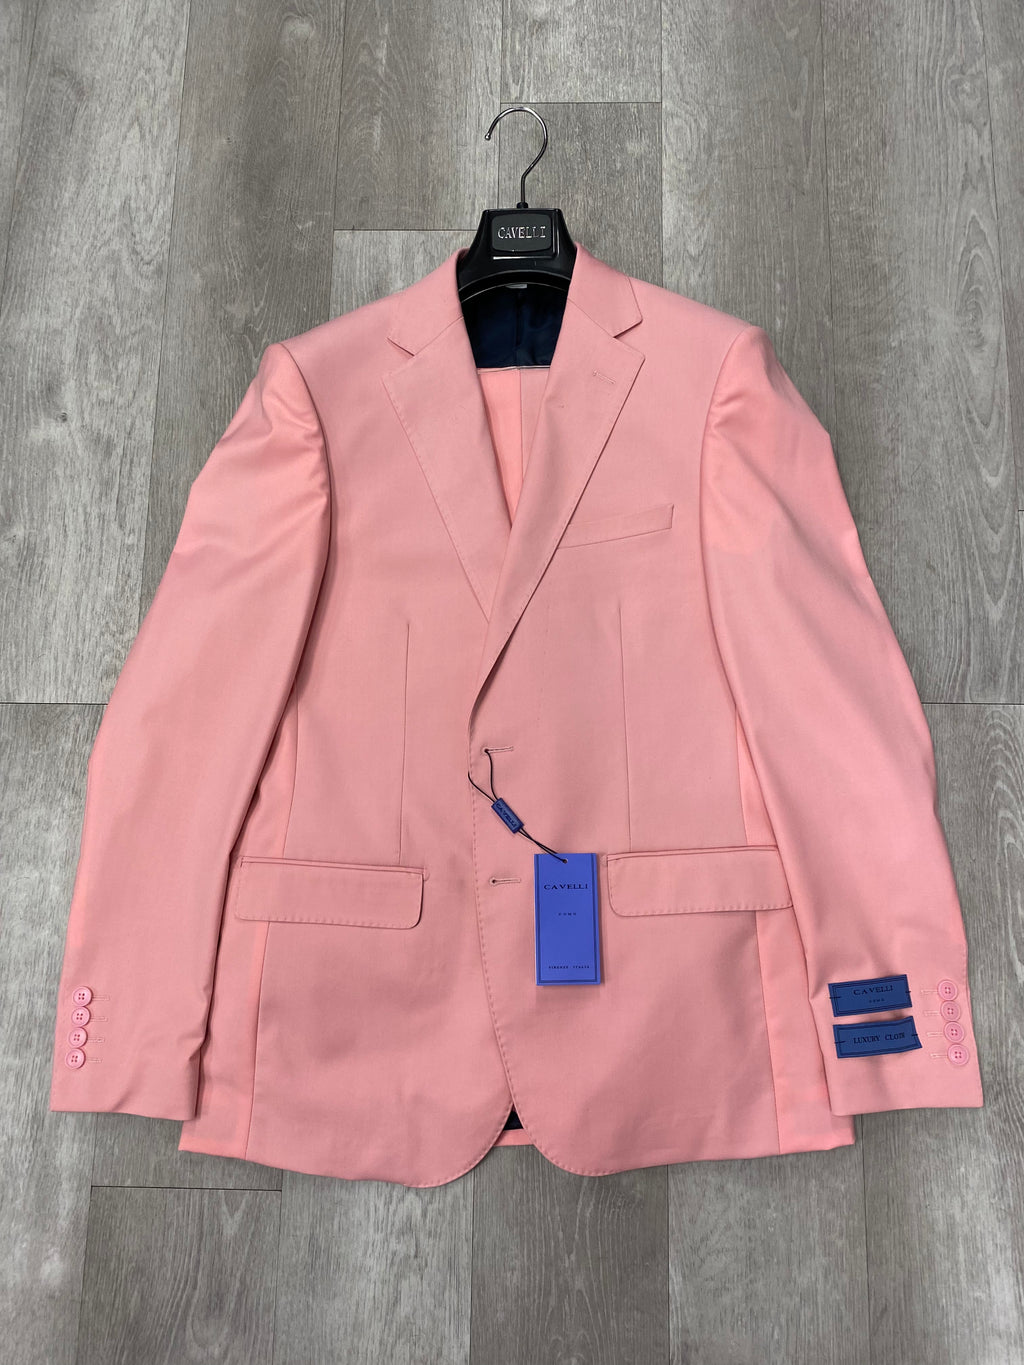 Cavelli Uomo Porto Slim Fit Suit 3488/2 Pink